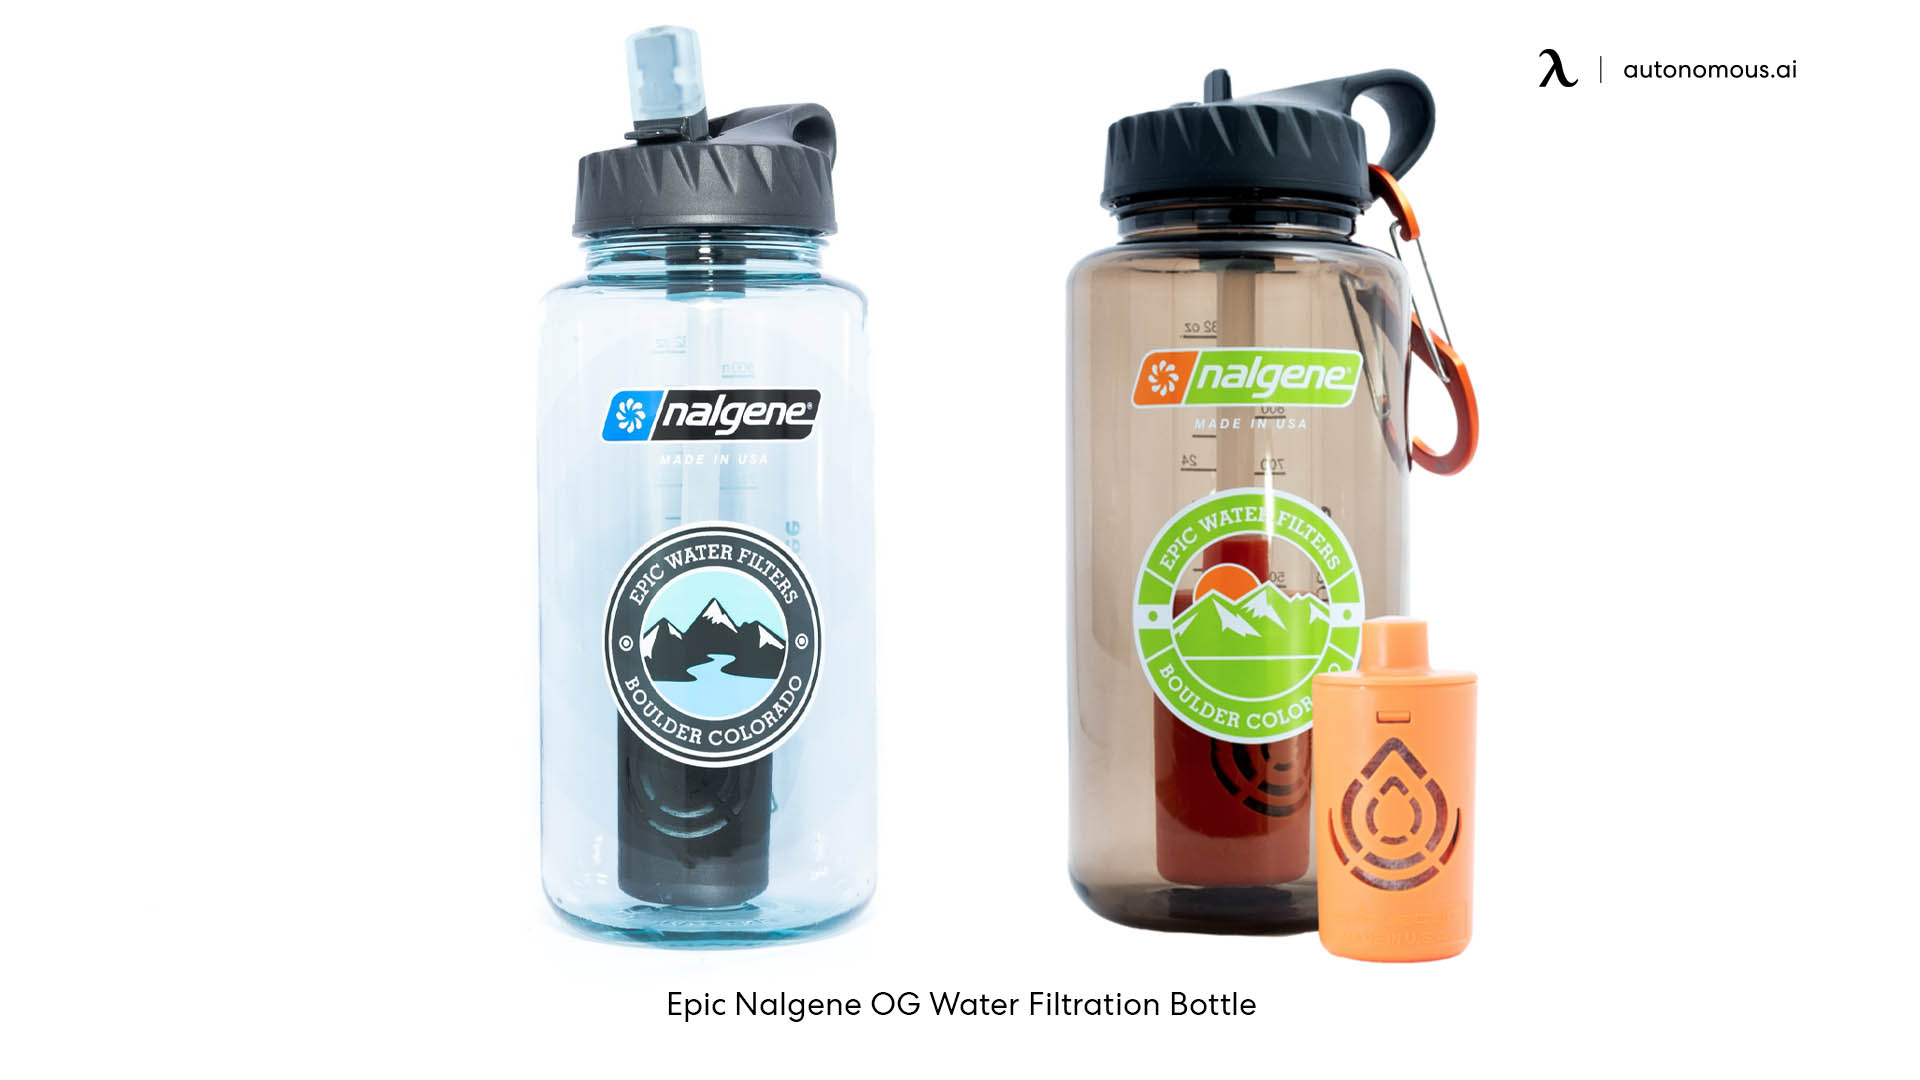 Epic Nalgene OG Water Filtration Bottle